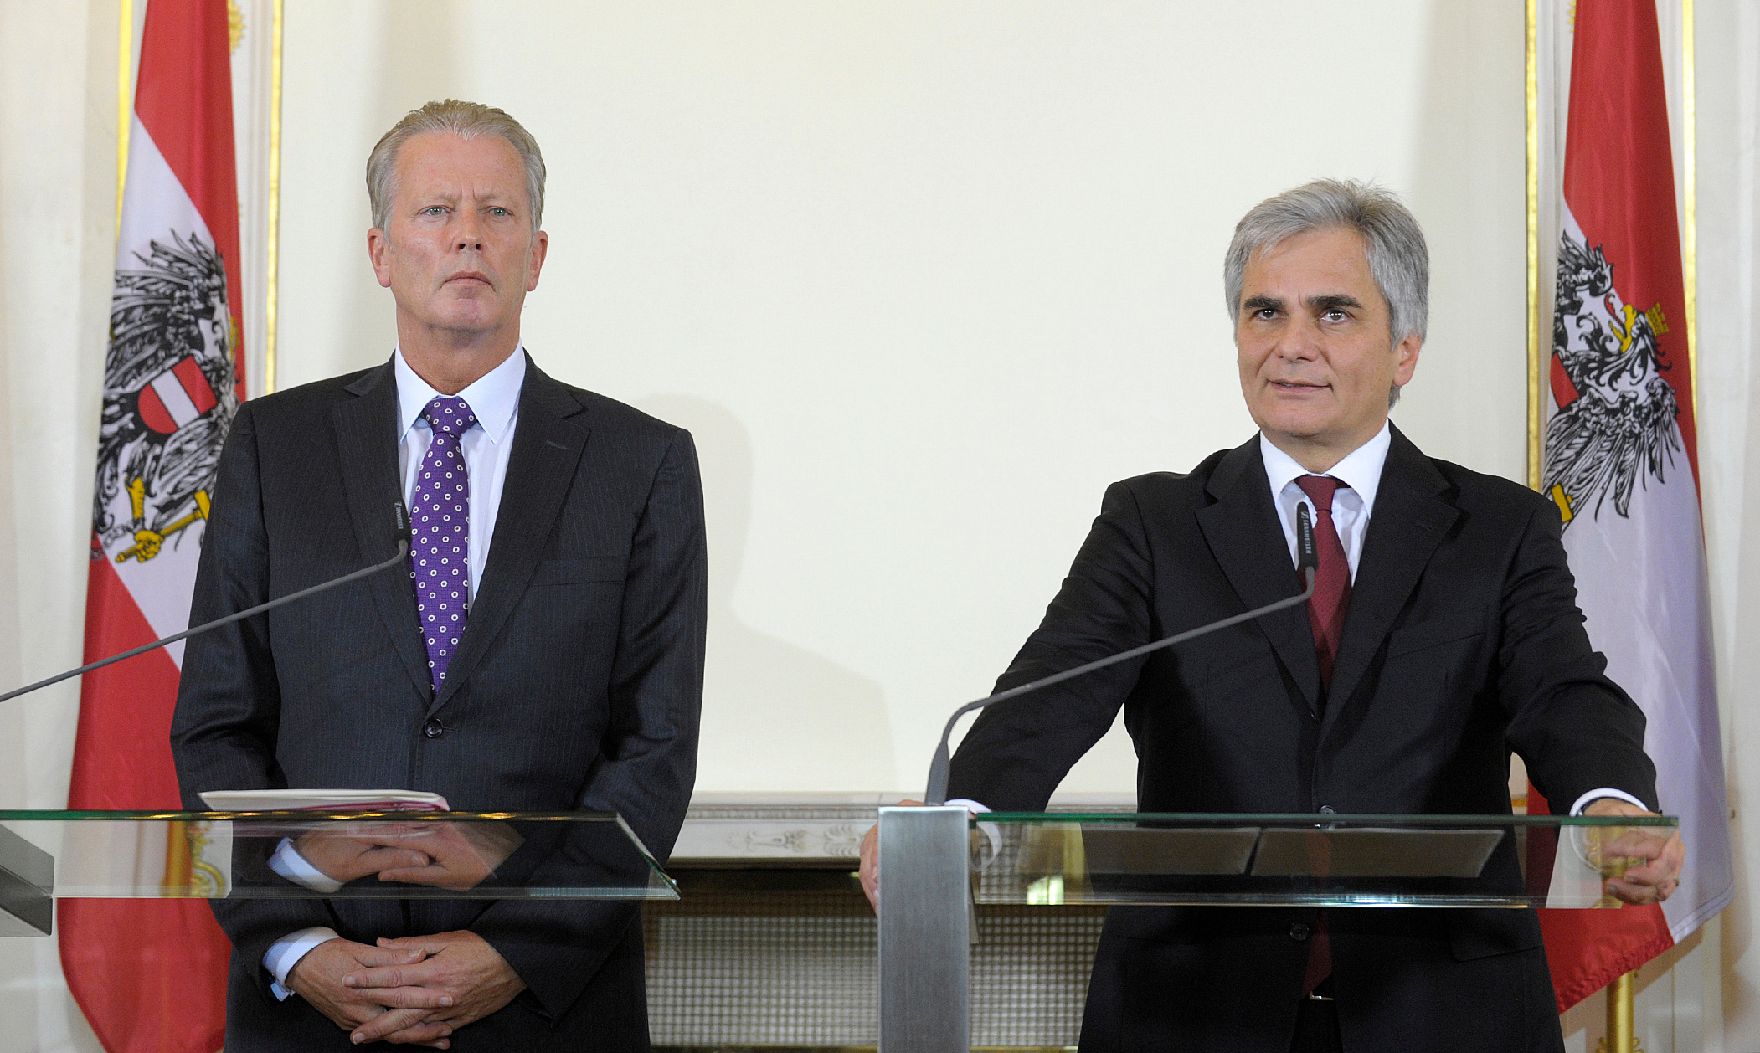 Bundeskanzler Werner Faymann (r.) mit Vizekanzler und Bundesminister Reinhold Mitterlehner (l.) beim Pressefoyer nach dem Ministerrat am 18. November 2014.